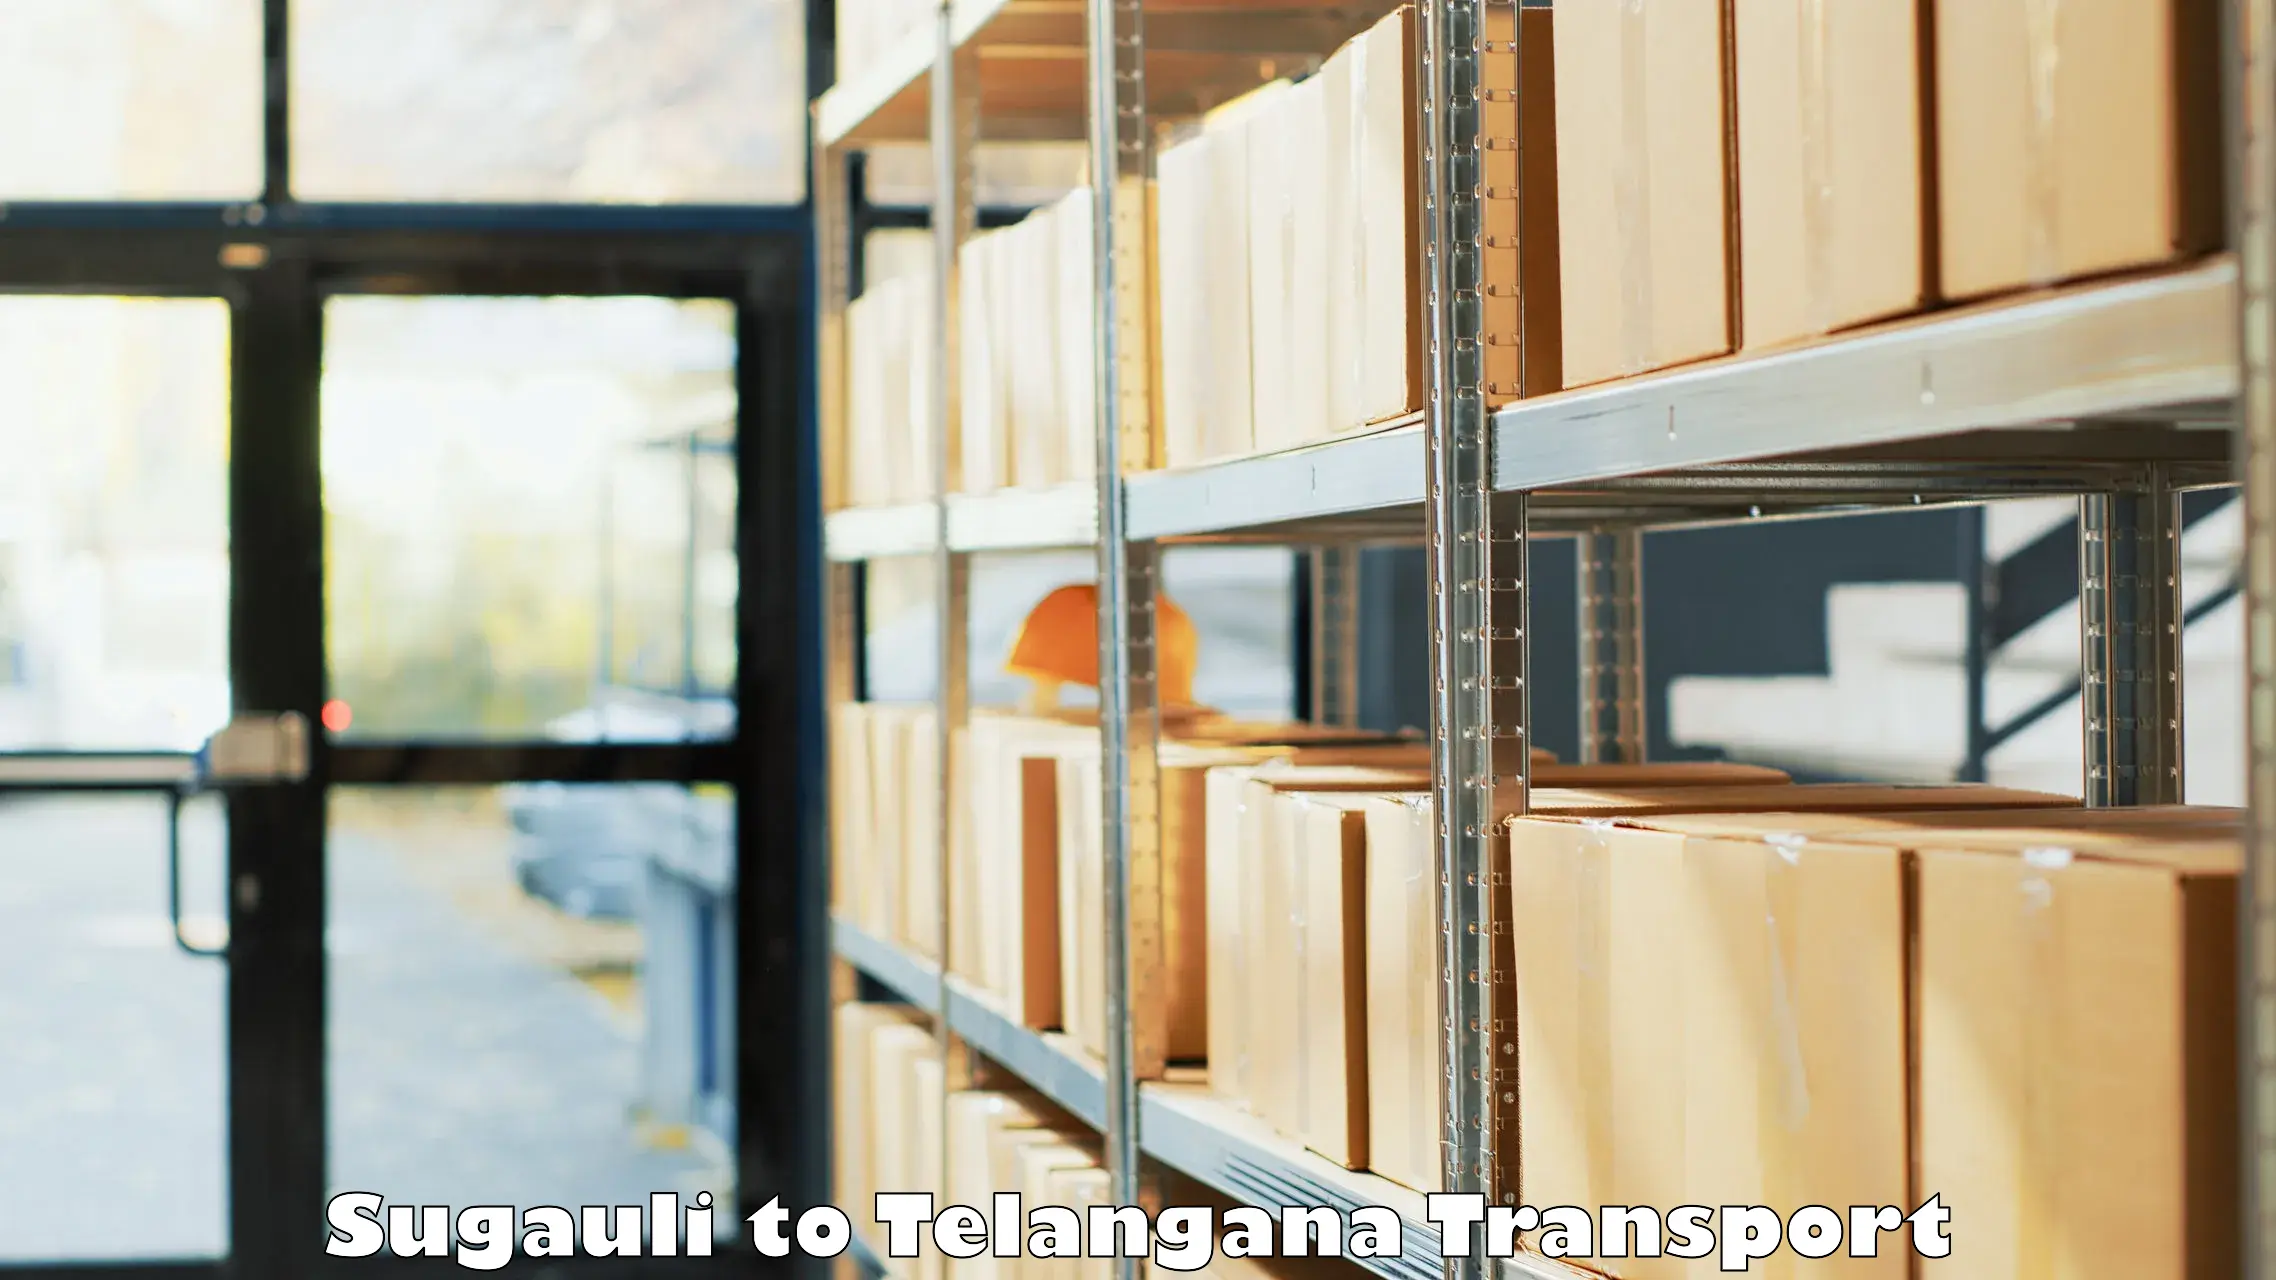 Transport in sharing in Sugauli to Jangaon